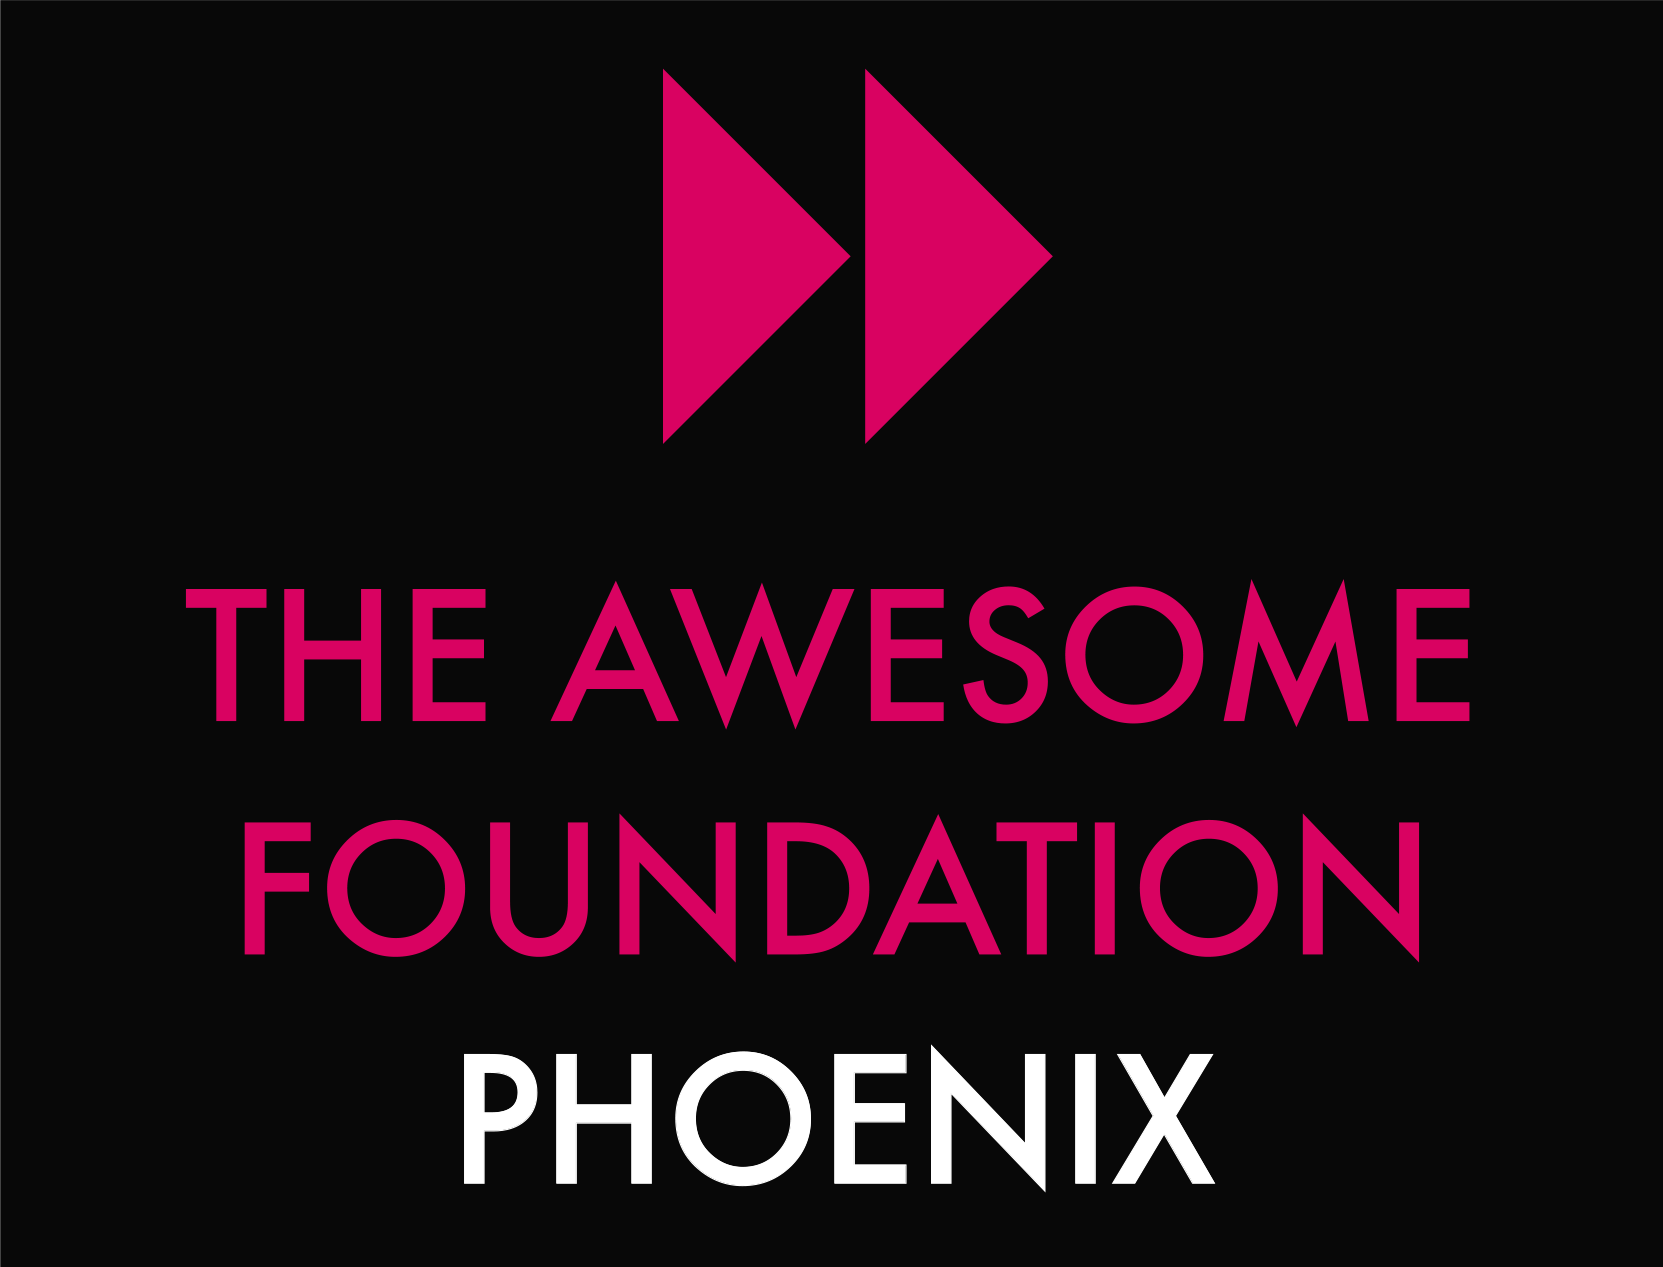 The Awesome Foundation Phoenix logo